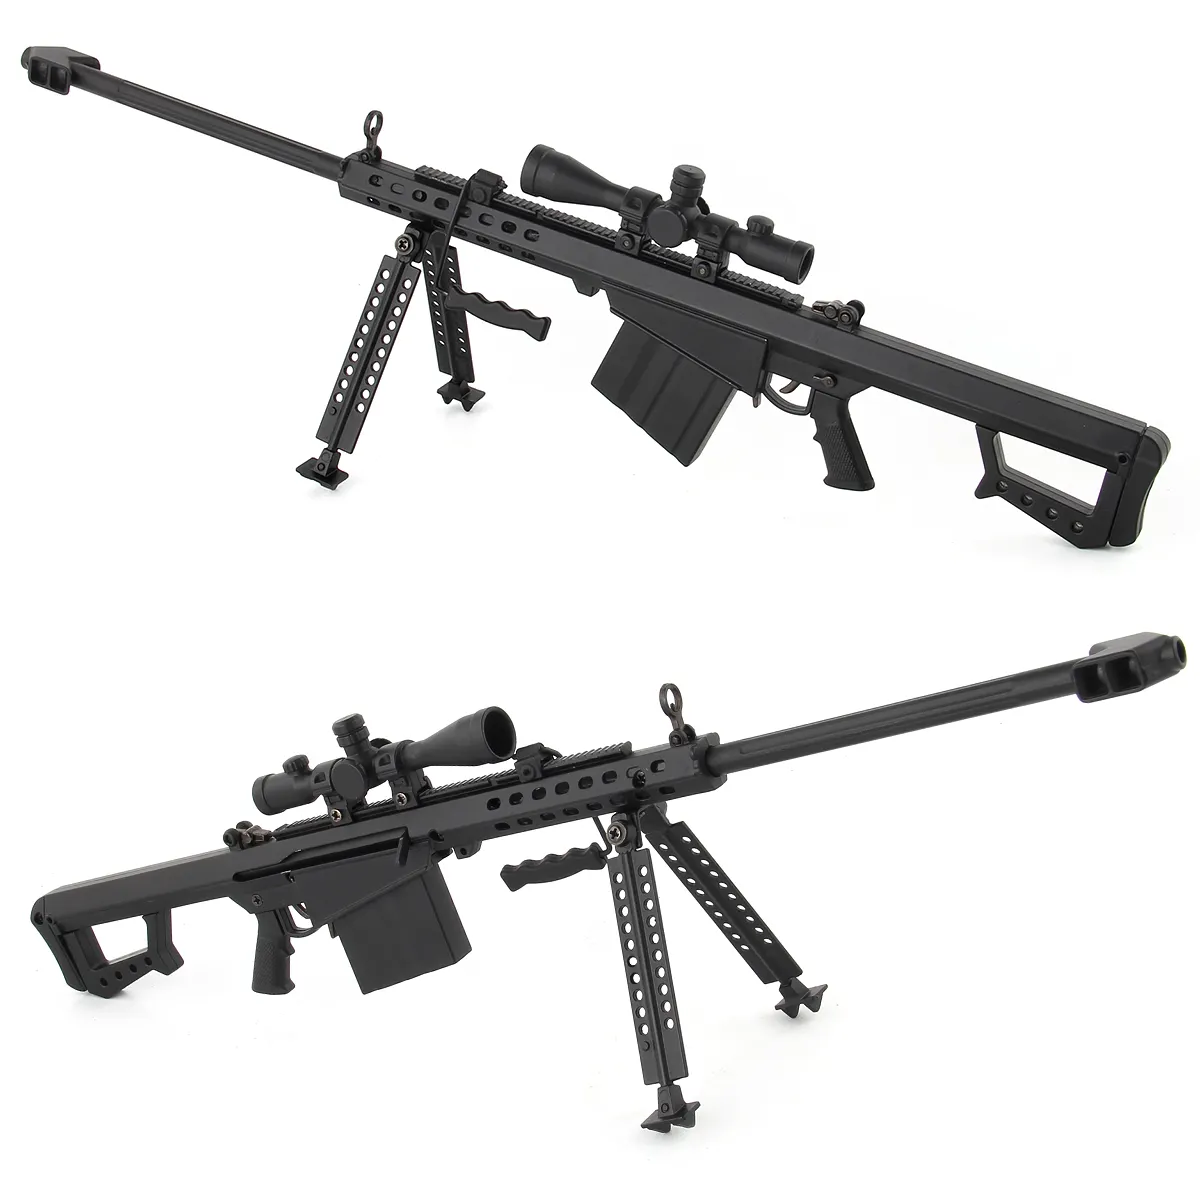 Mini pistolet en métal modèle pistolet en alliage, jouets Barrett fusil de Sniper AK47 jouet pistolet